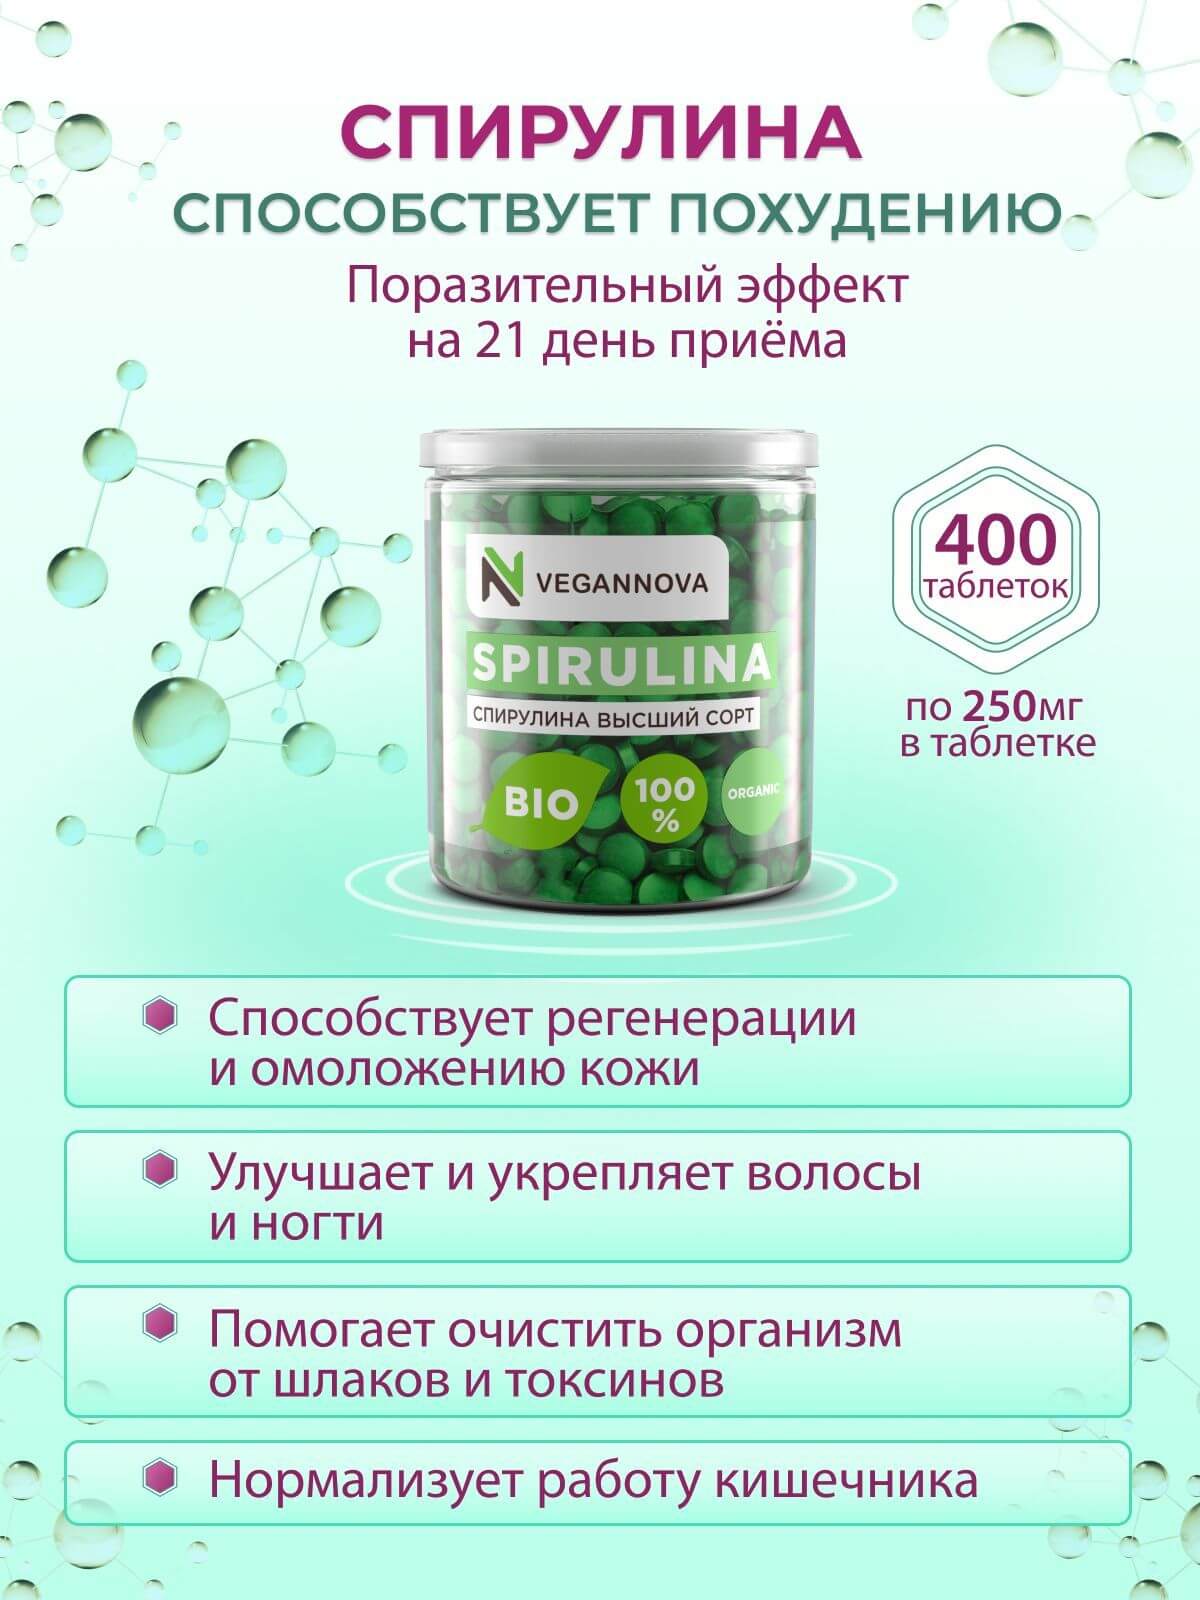 VeganNova Спирулина высшего качества в таблетках, для похудения, органическая, суперфуд, 100 г (400 шт по 250 мг)